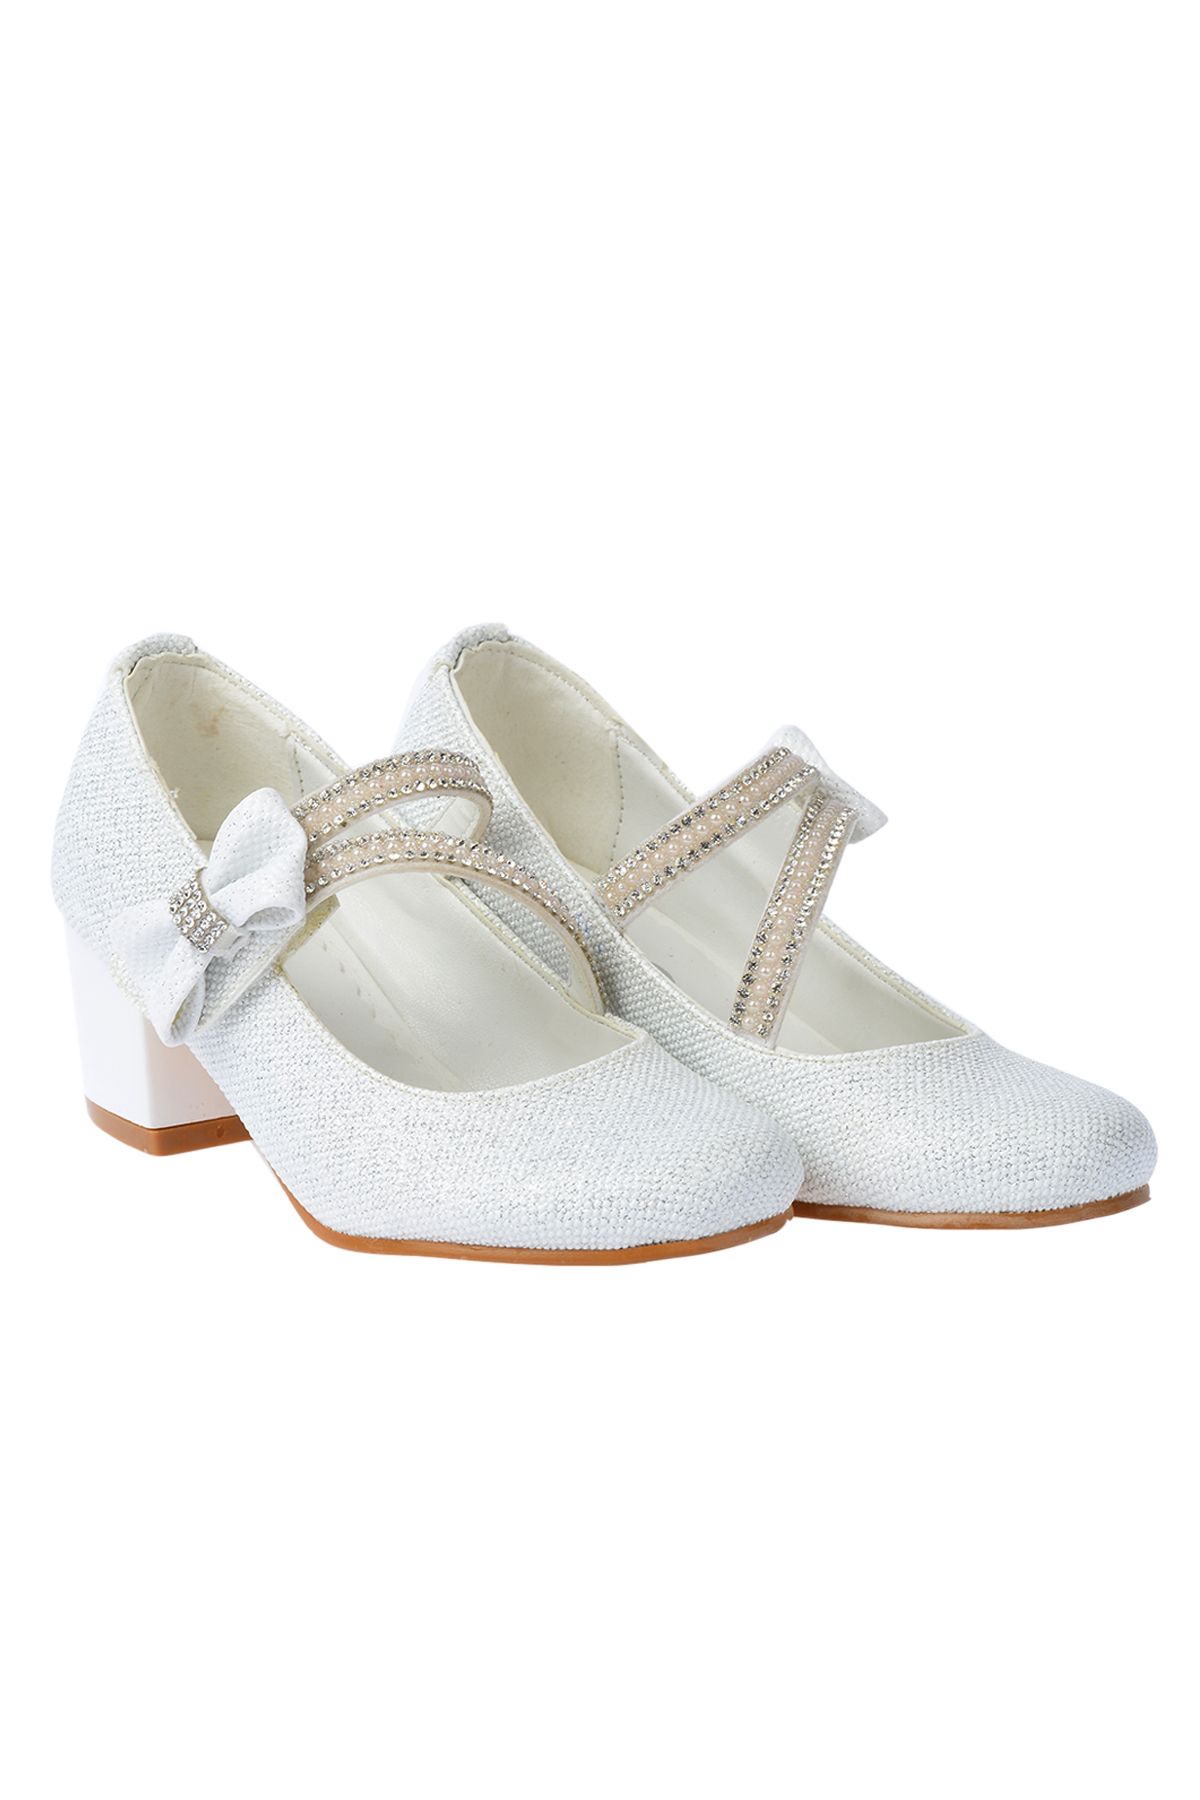 Kiko Kids Kız Çocuk Beyaz Abiye Ayakkabı Simli Günlük 4 Cm Topuklu Bilekten Bantlı Fiyonklu 750